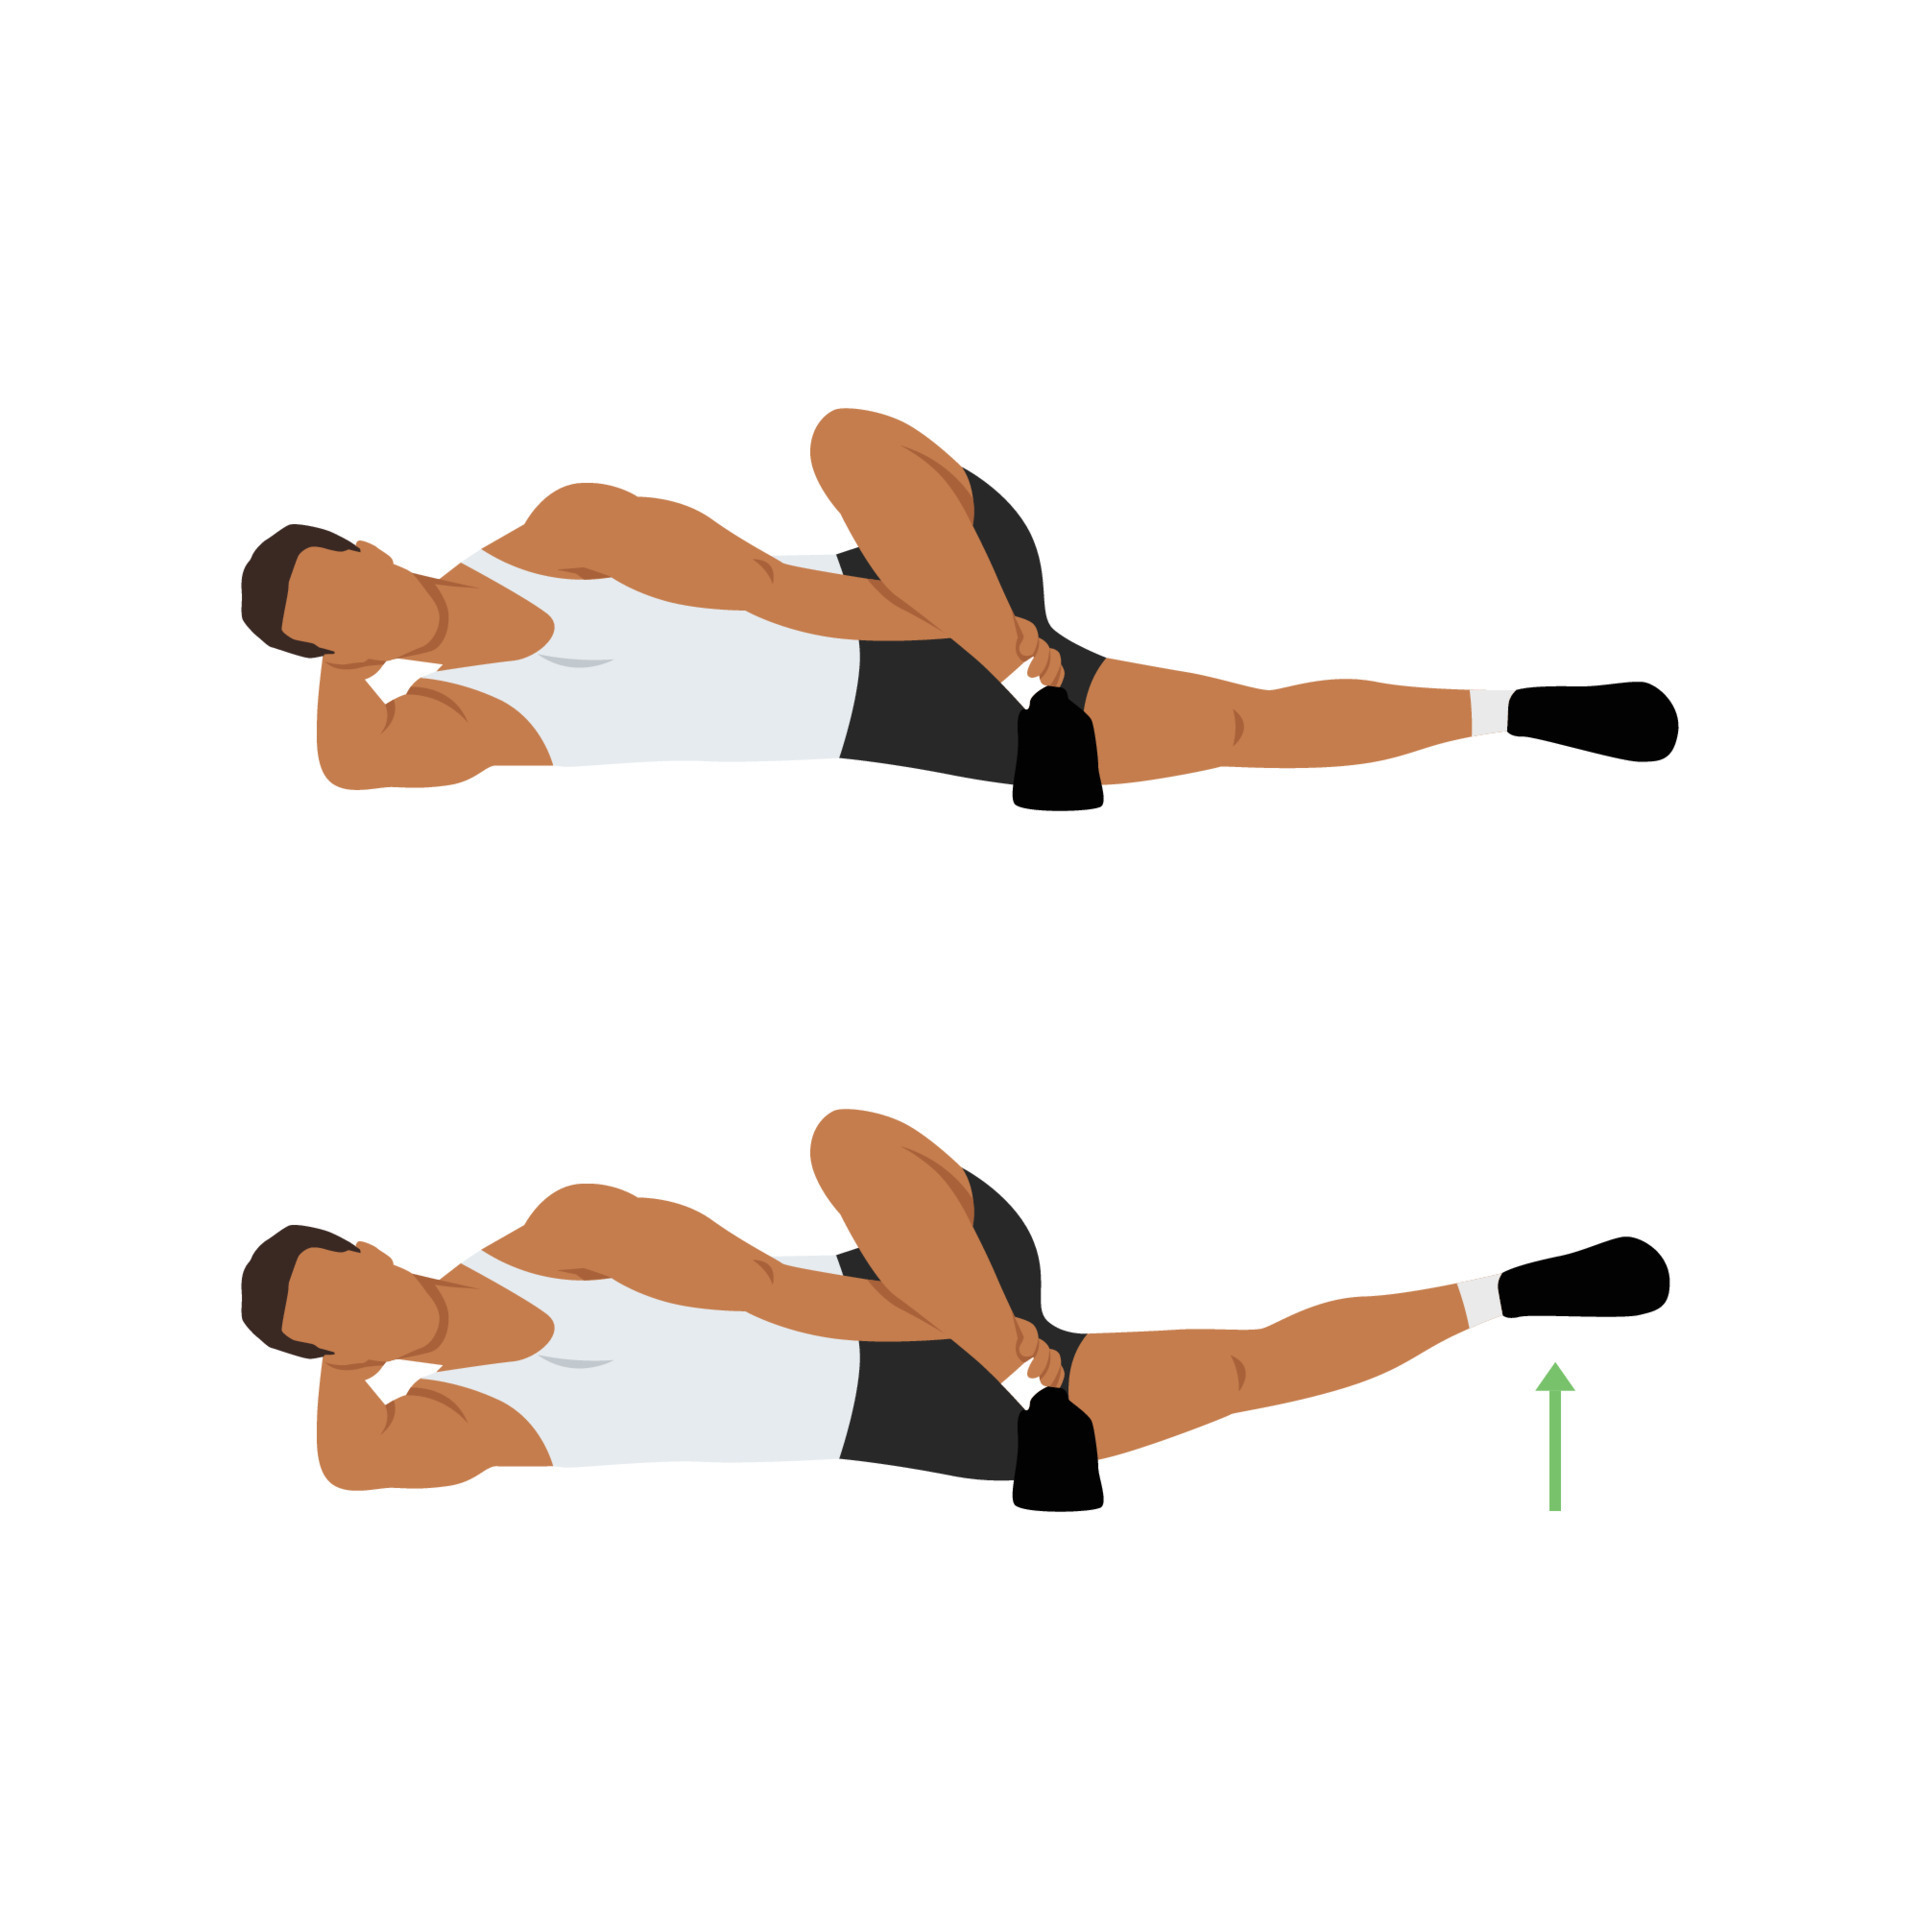 Man doing Lying Crossover Leg Lift Exercise in 2 steps